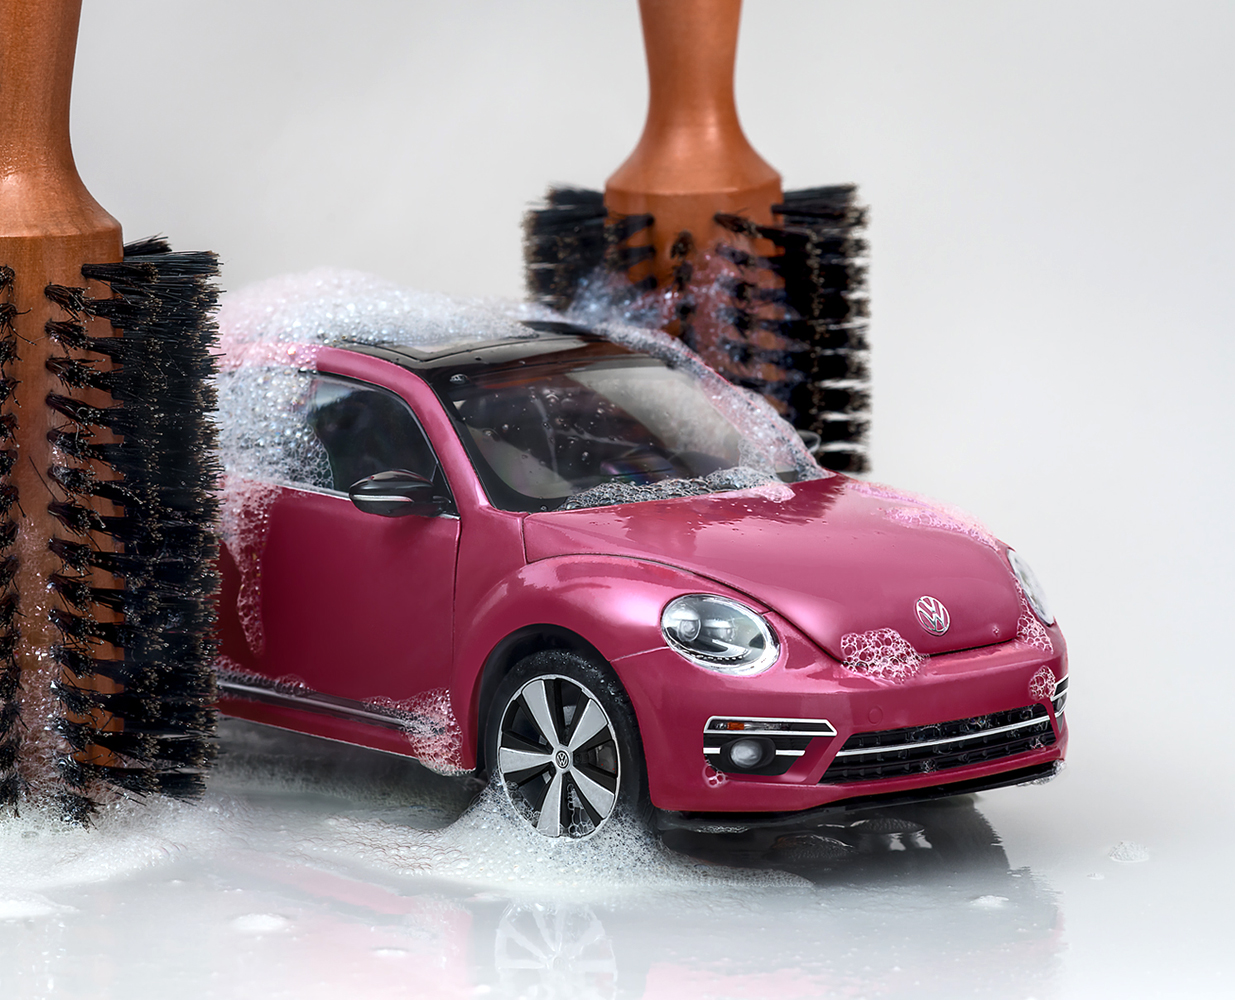 Fotografía creativa para contenido digital de Volkswagen con Beetle Pink.